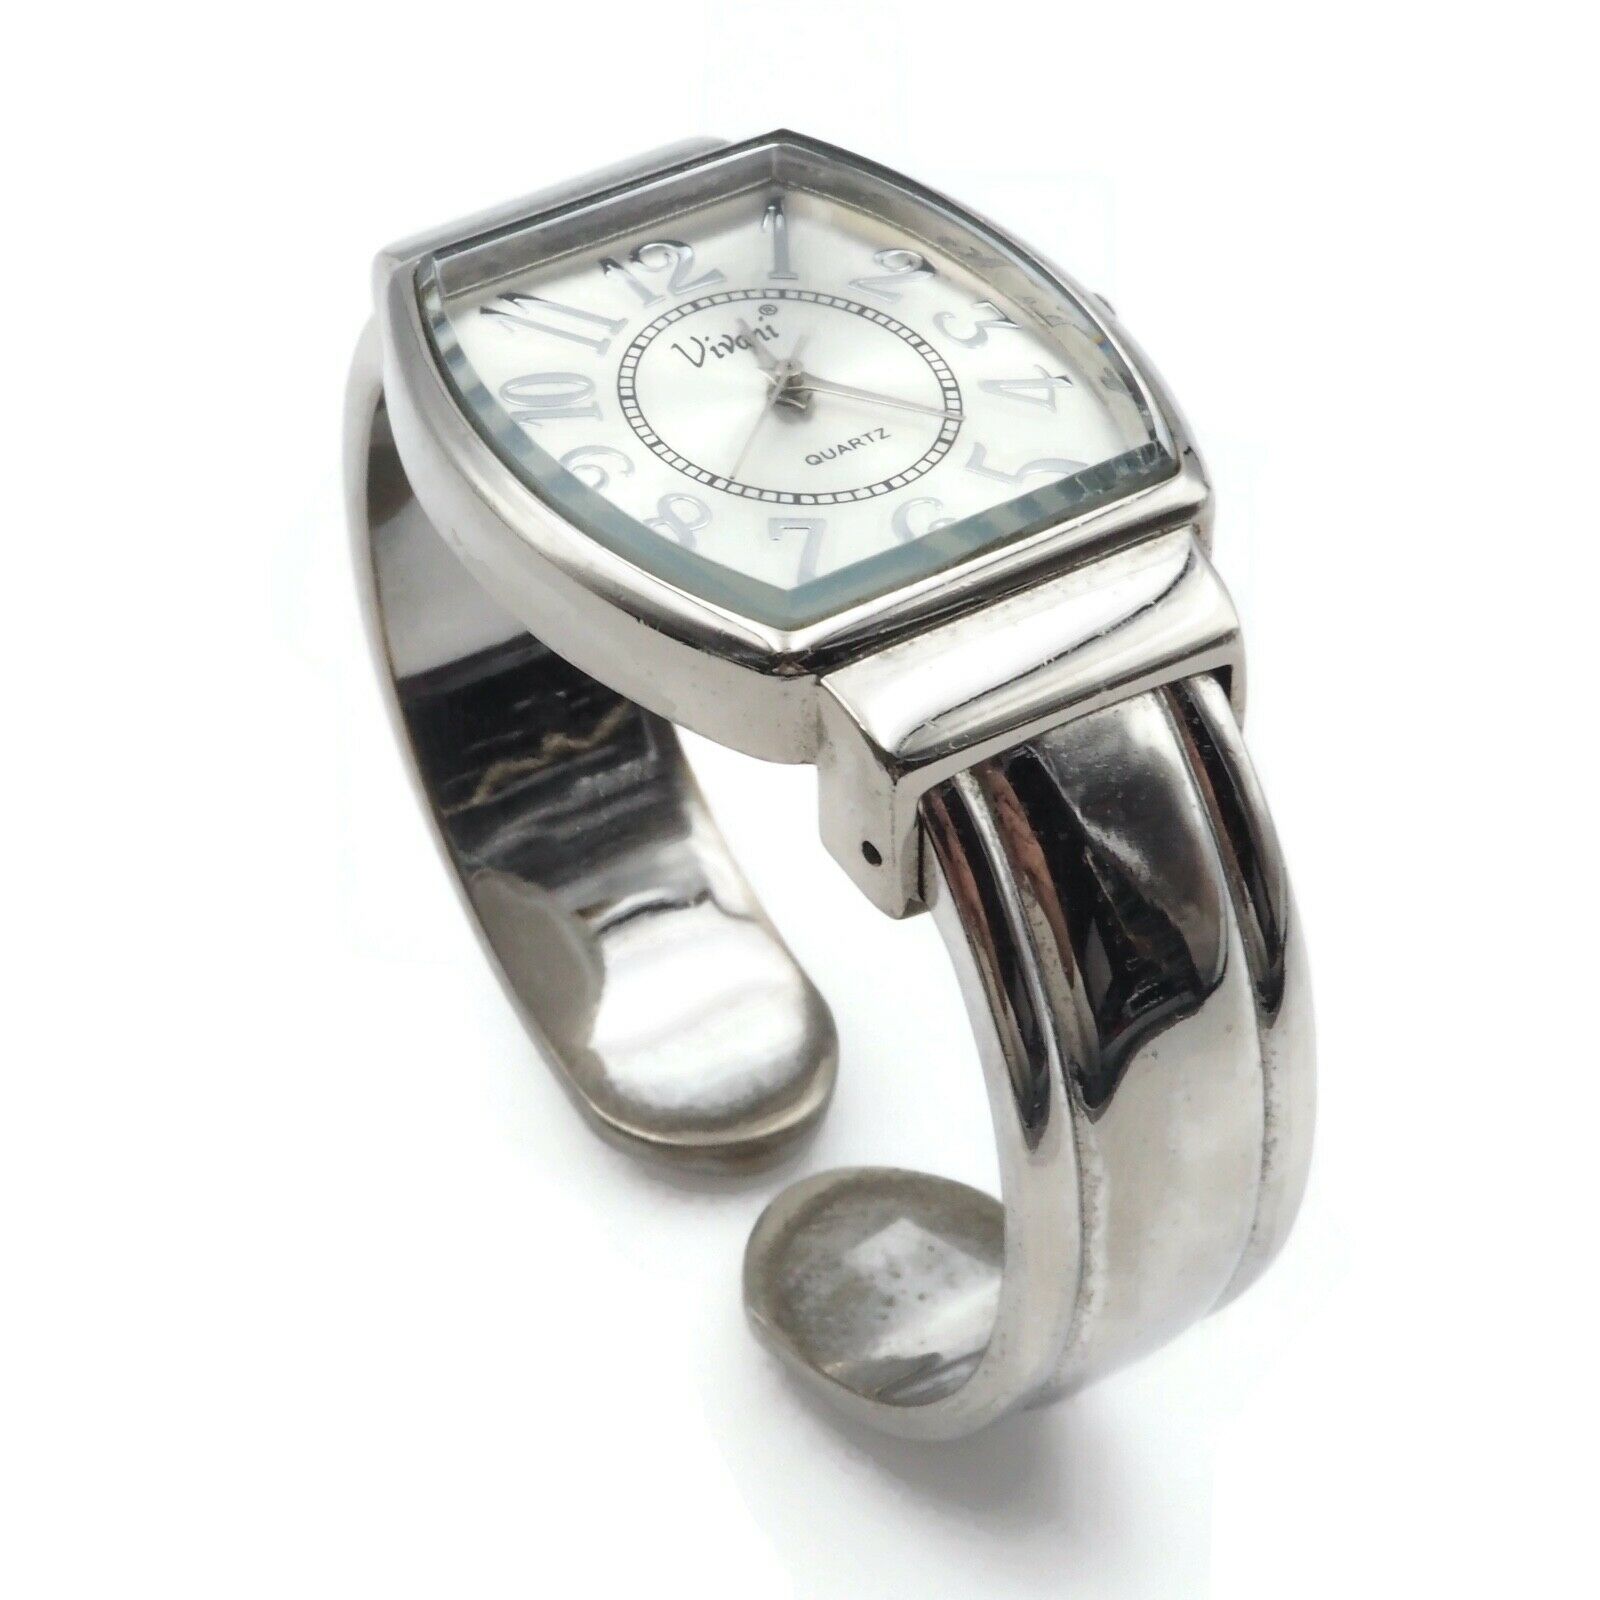 Women's Vivani Silver Ton Bangle Bracelet Watch with... - Depop